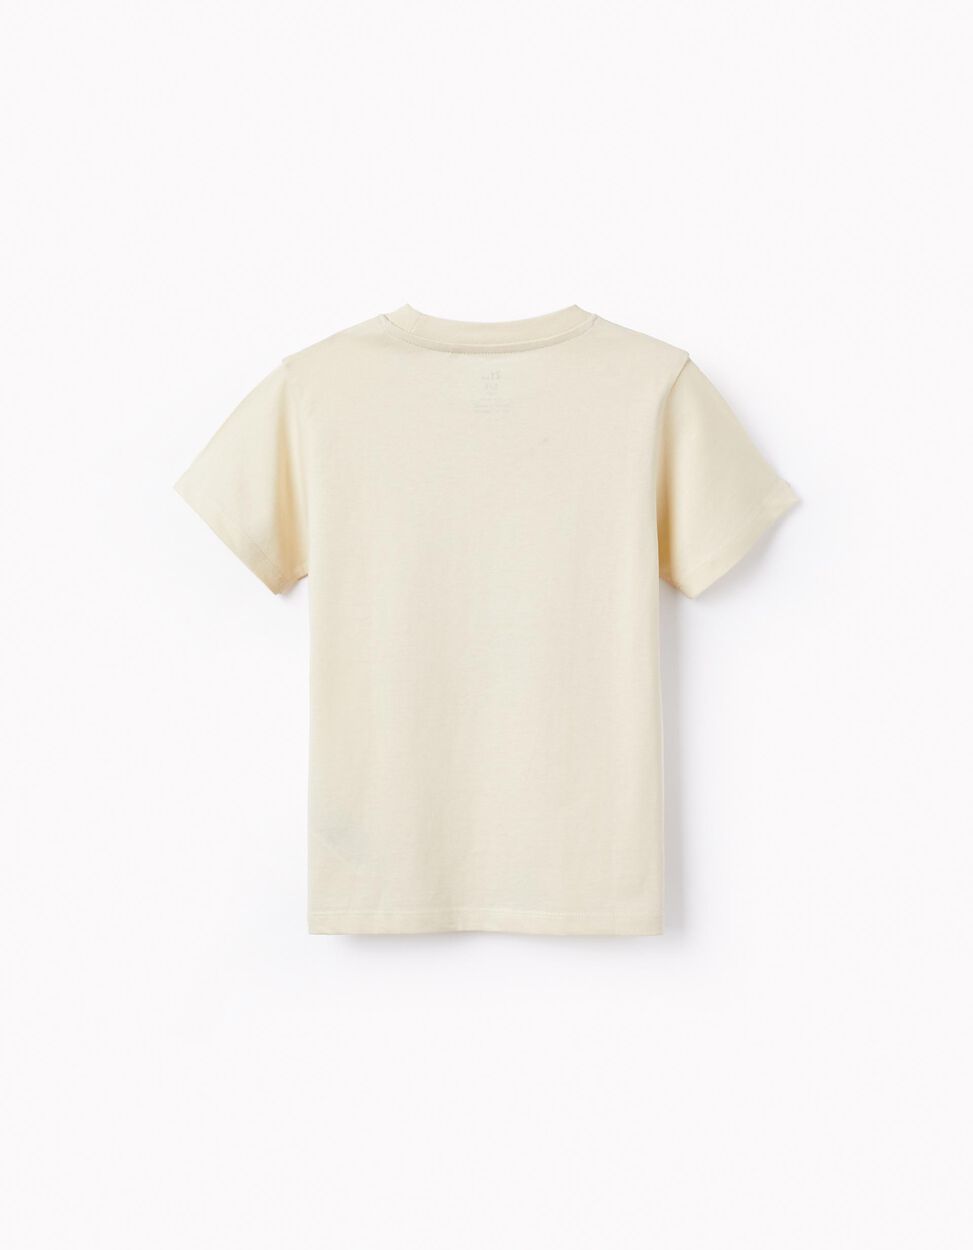 Buy Online Cotton T-shirt for Boys 'Havana', White